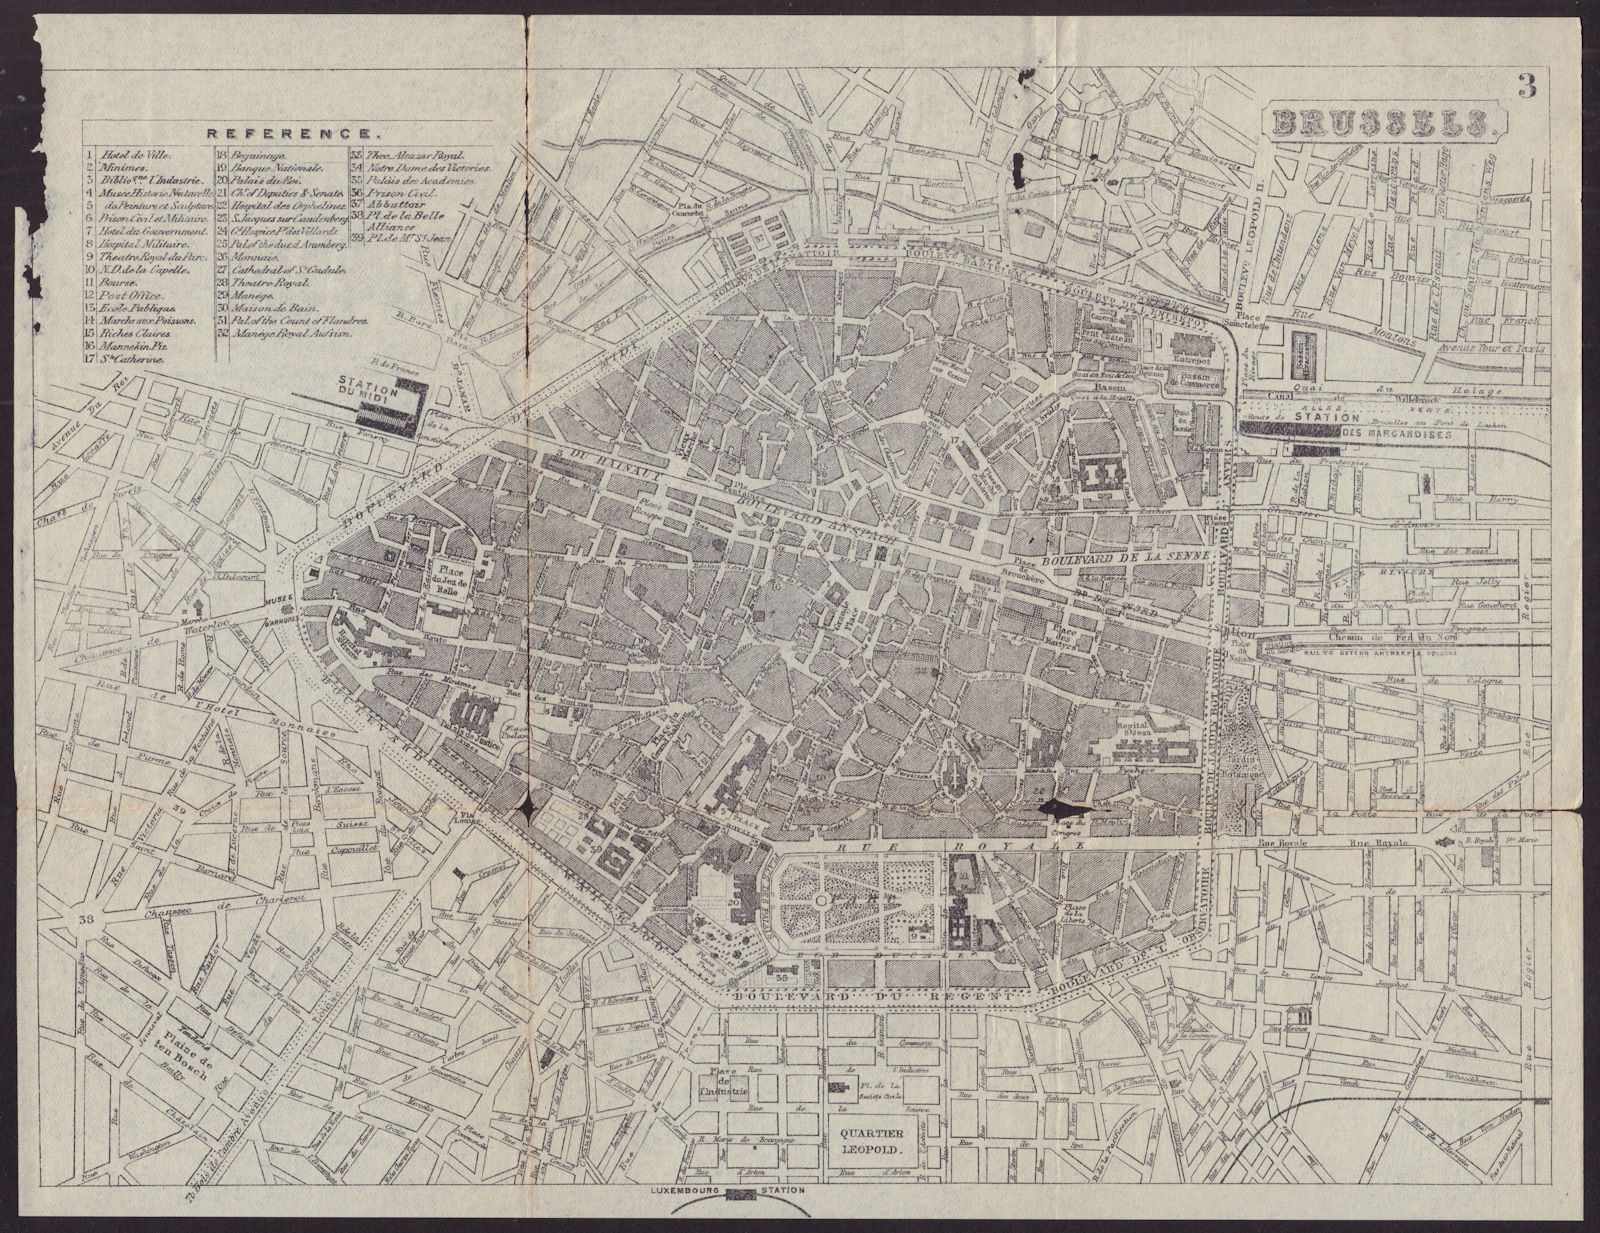 BRUSSELS BRUSSEL BRUXELLES antique town plan city map. Belgium. BRADSHAW c1899